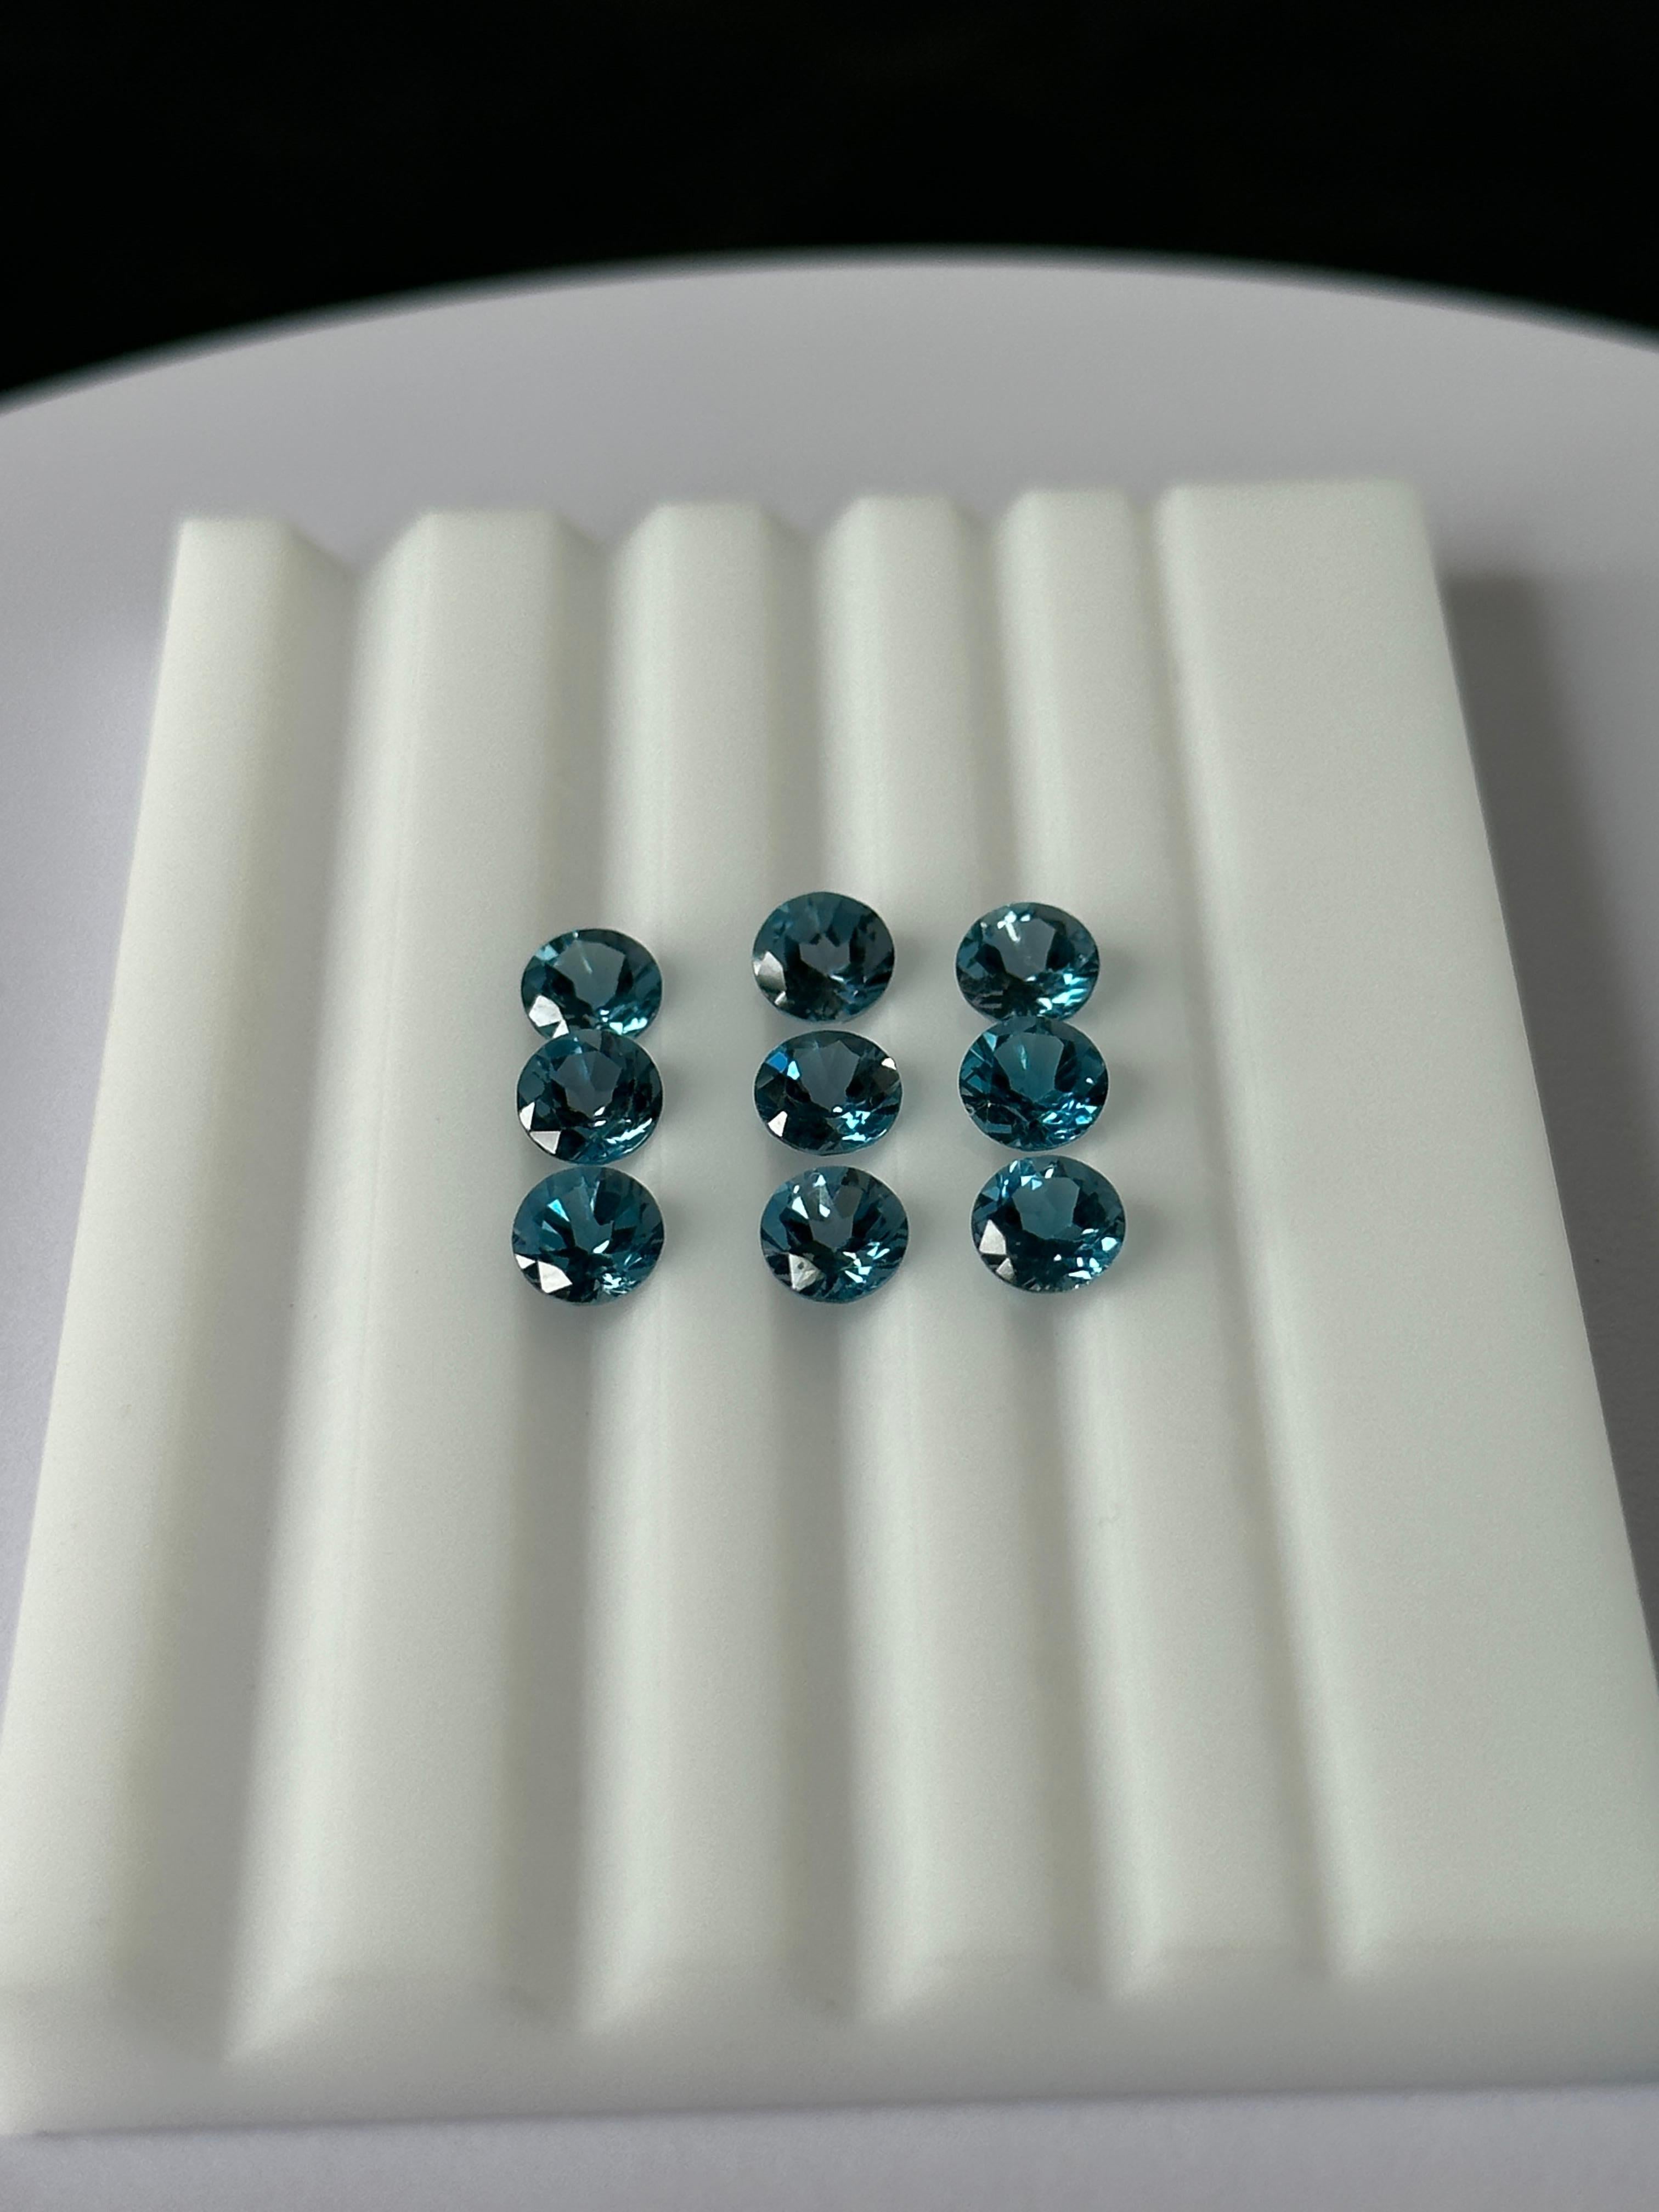 Un lot de Topazes Bleues comprenant 9 gemmes totalisant un poids de 5,35 carats.
Ces topazes bleues appartiennent à la catégorie du bleu de Londres en raison de leur tonalité plus foncée et de leur très légère nuance de bleu verdâtre.
La topaze est